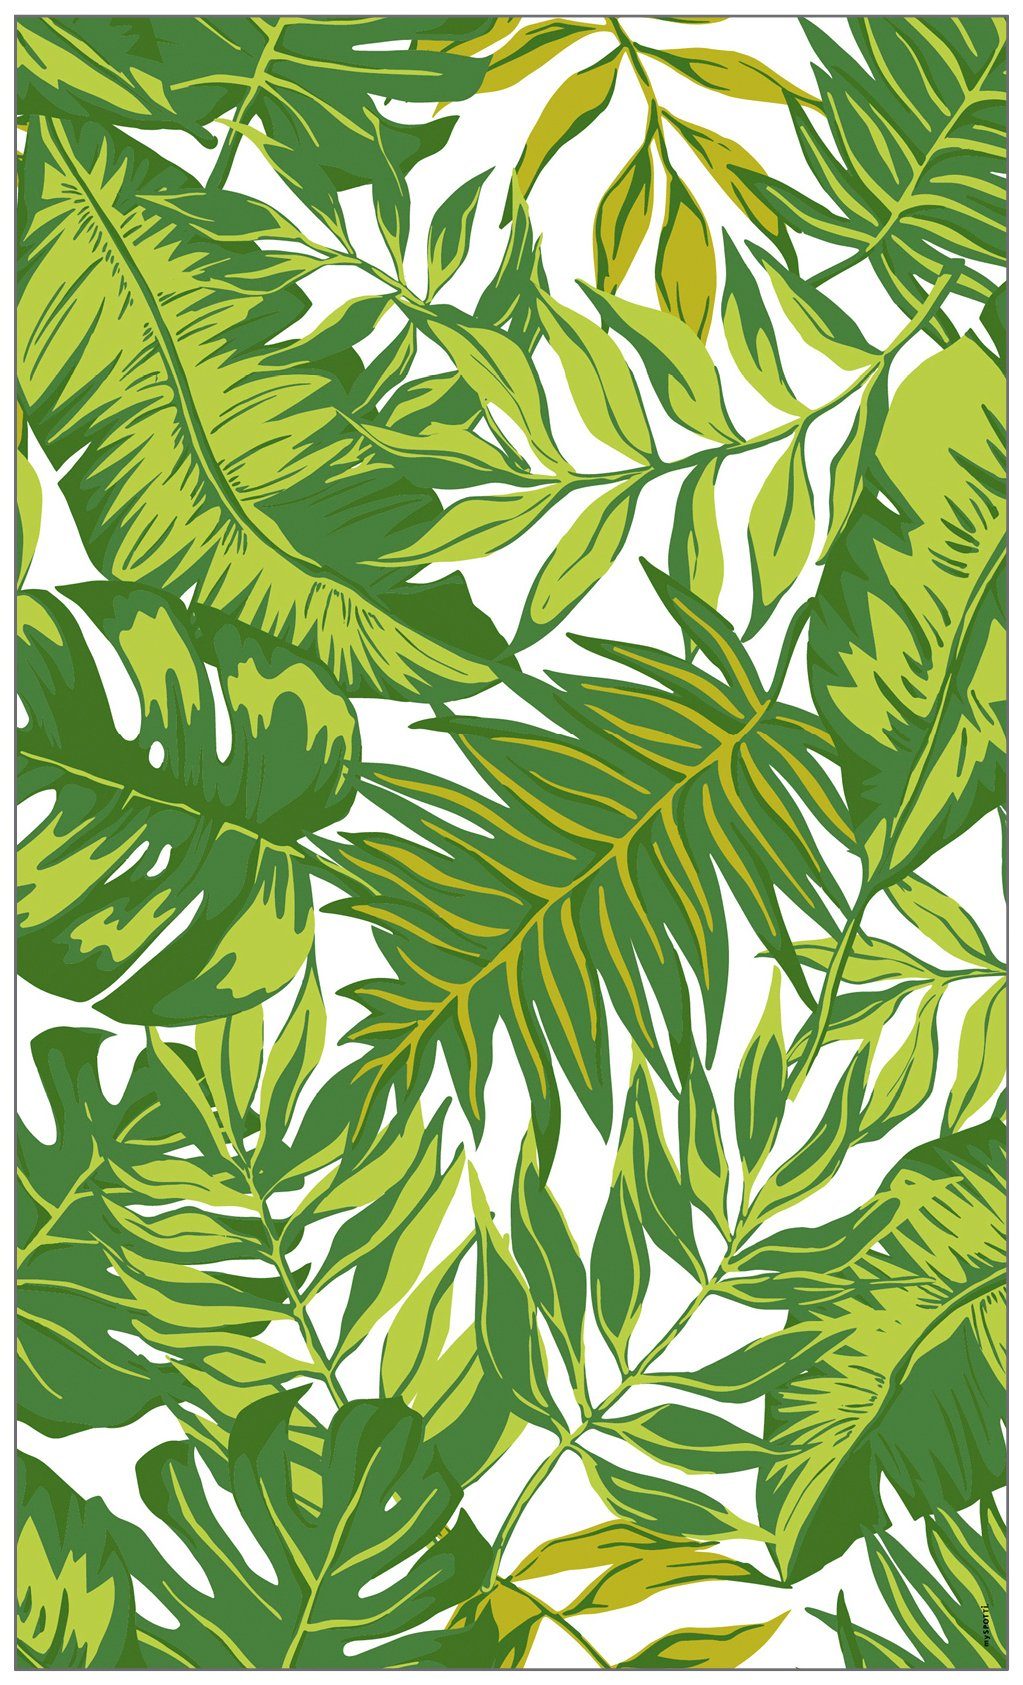 Schockierende Preise! Fensterfolie Look Palm Leaves halbtransparent, cm, glatt, x 60 statisch 100 haftend green, MySpotti